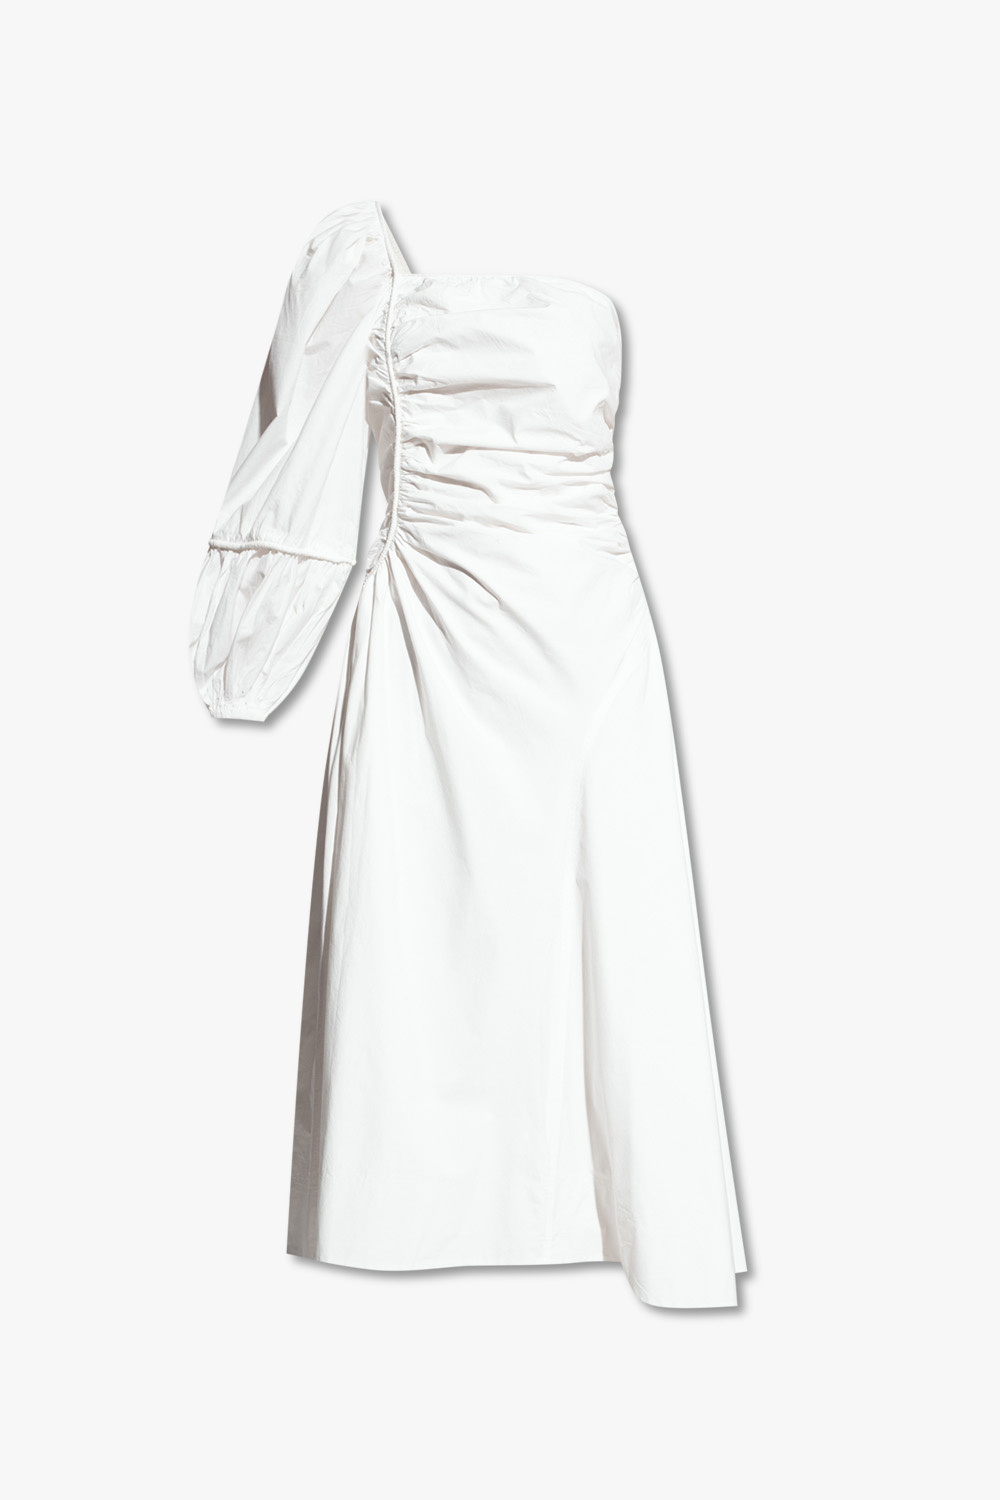 Ulla Johnson ‘Fiorella’ one-shoulder dress